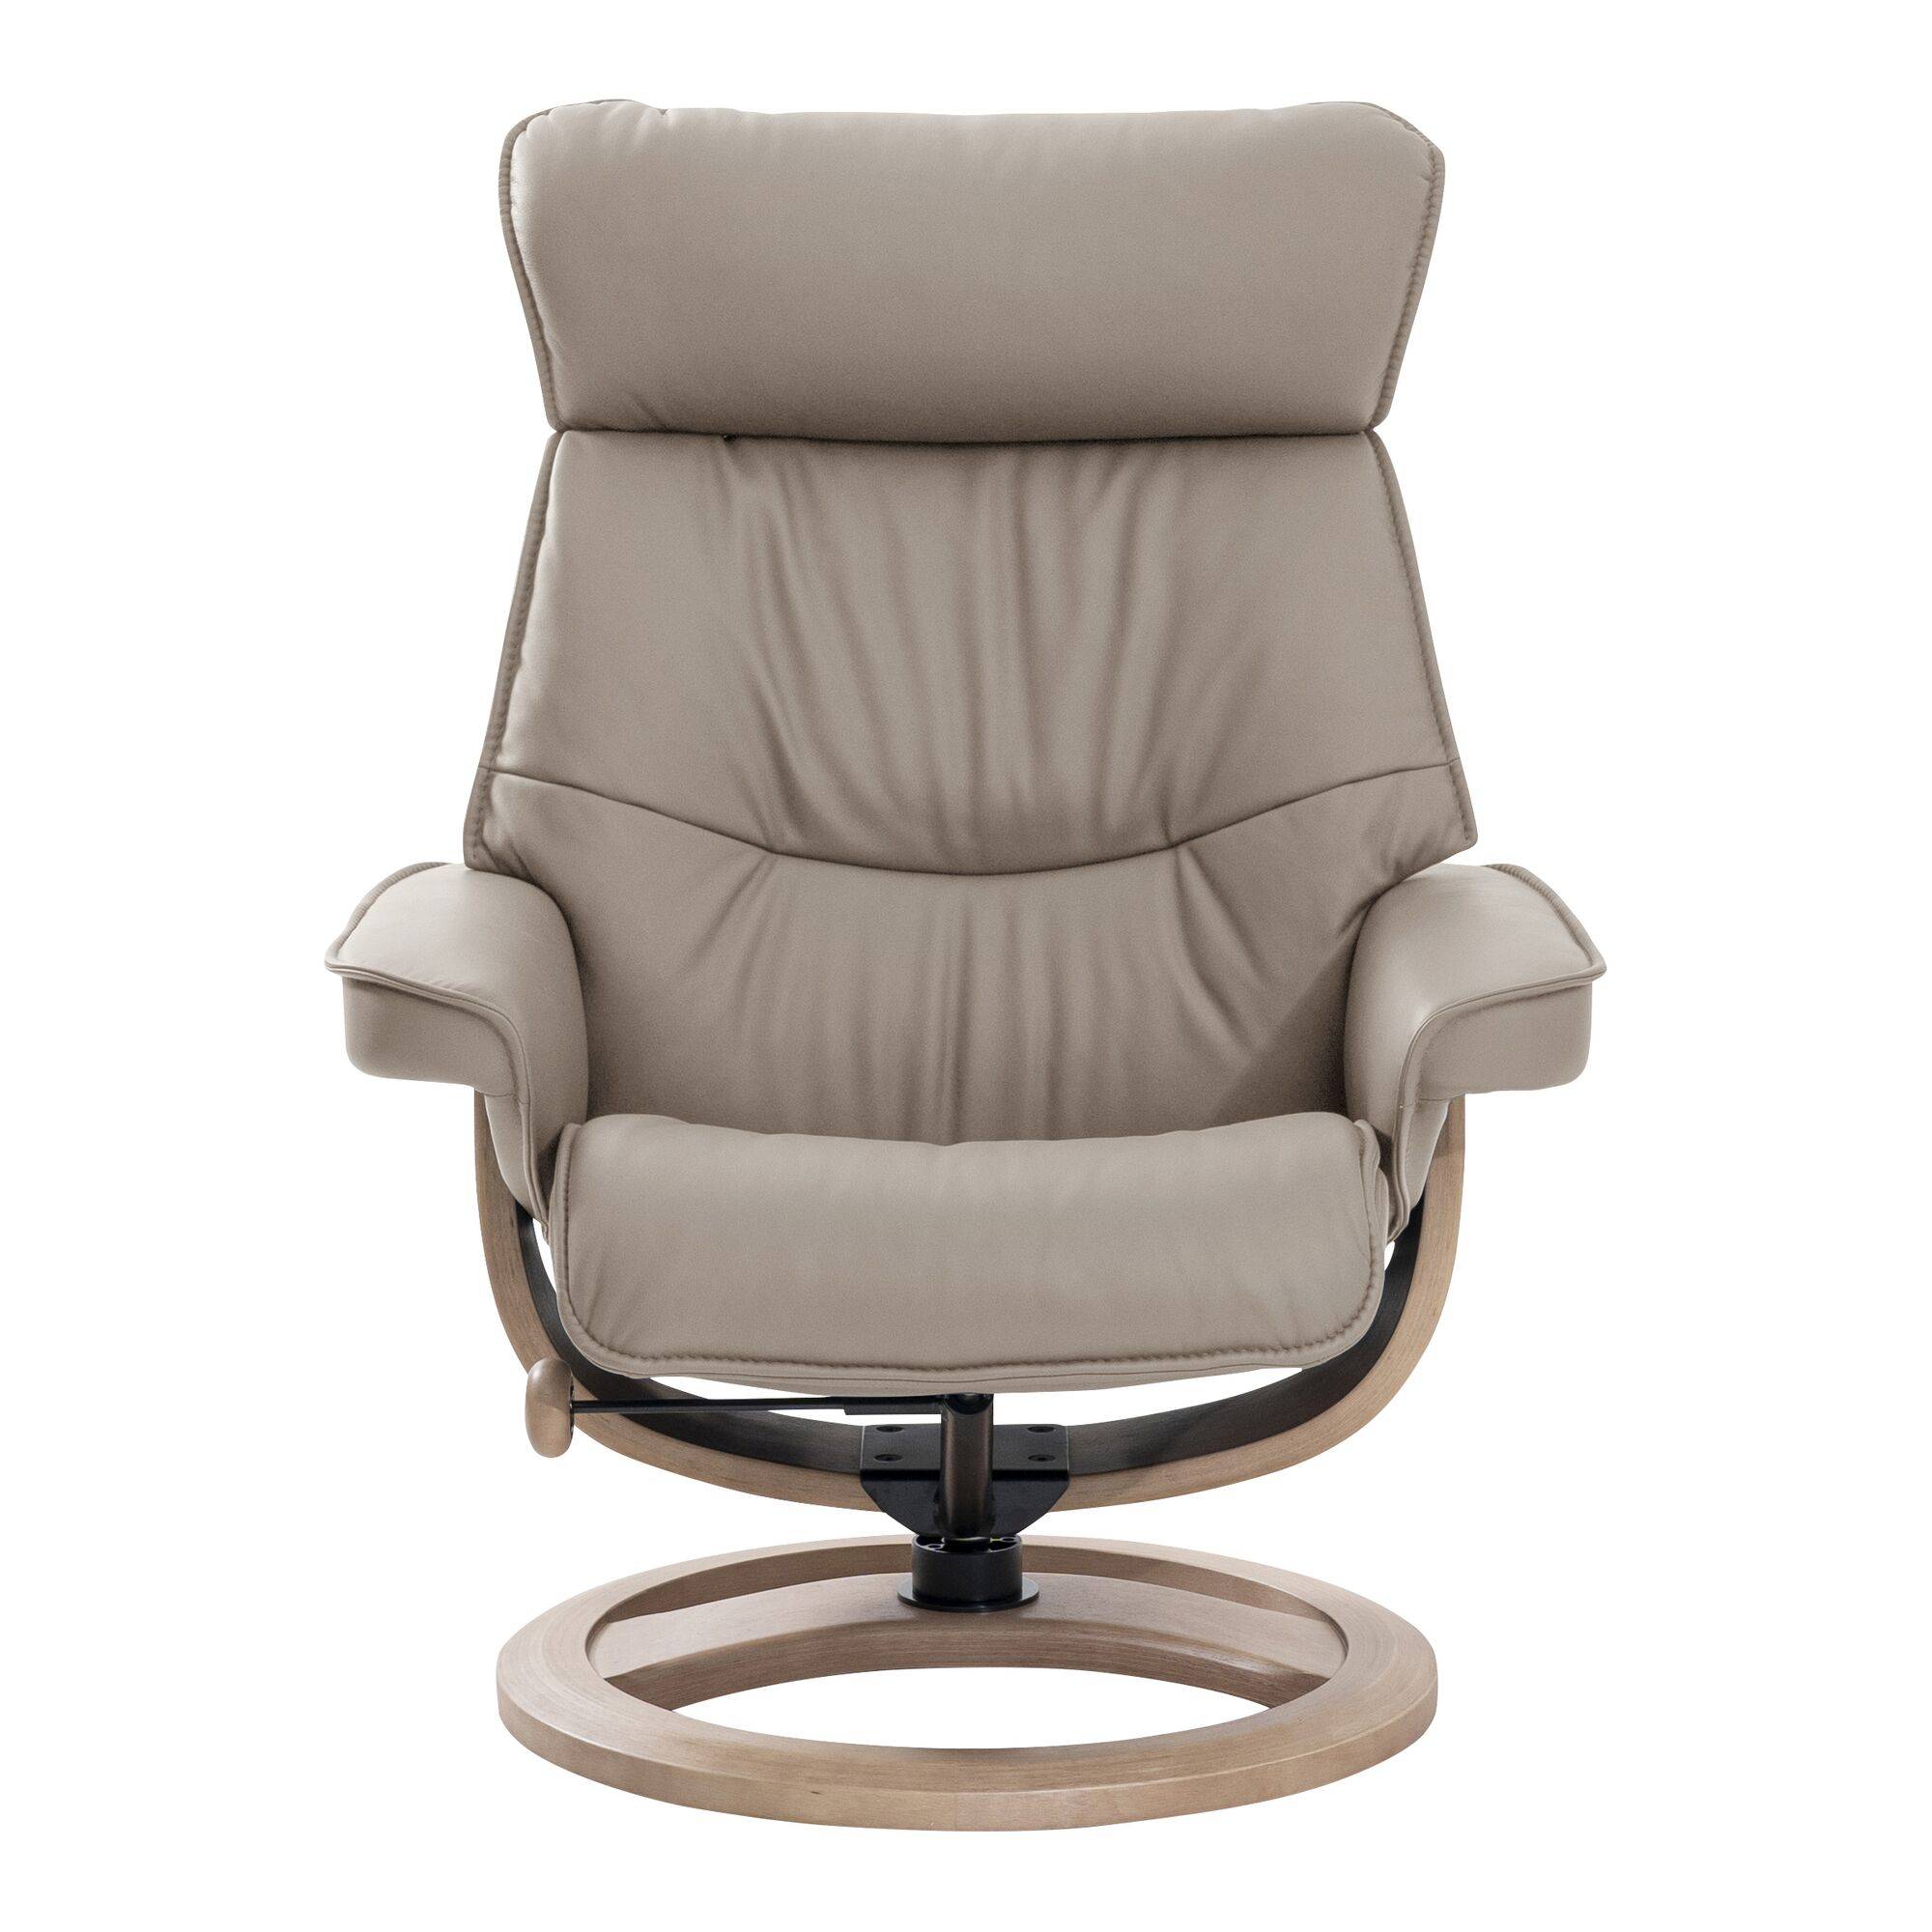 Stressless lance une gamme de fauteuils de… BUREAU. Confort assuré